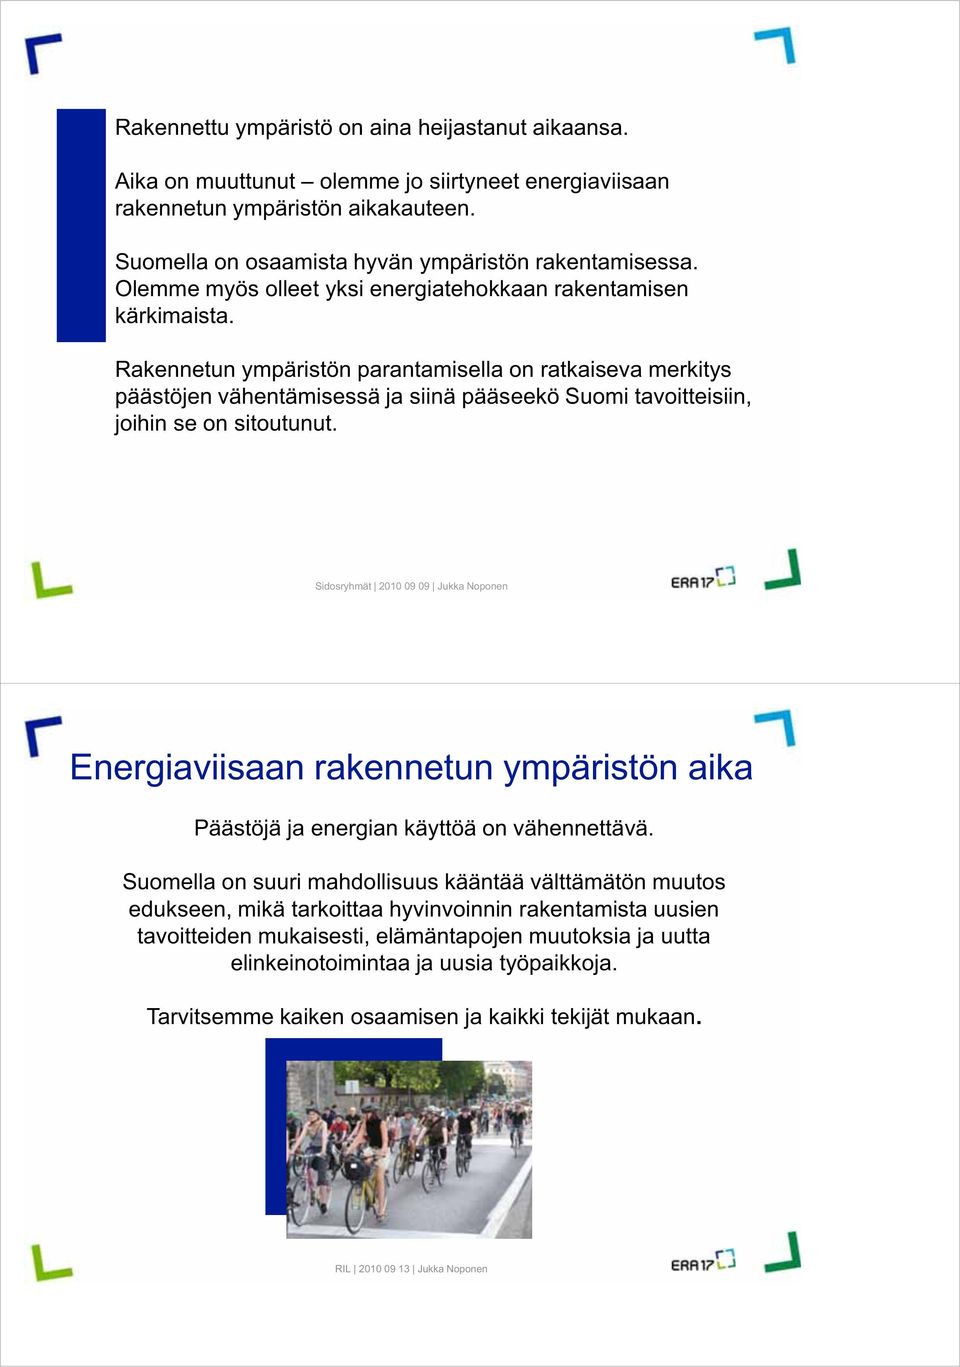 Rakennetun ympäristön parantamisella on ratkaiseva merkitys päästöjen vähentämisessä ja siinä pääseekö Suomi tavoitteisiin, joihin se on sitoutunut.